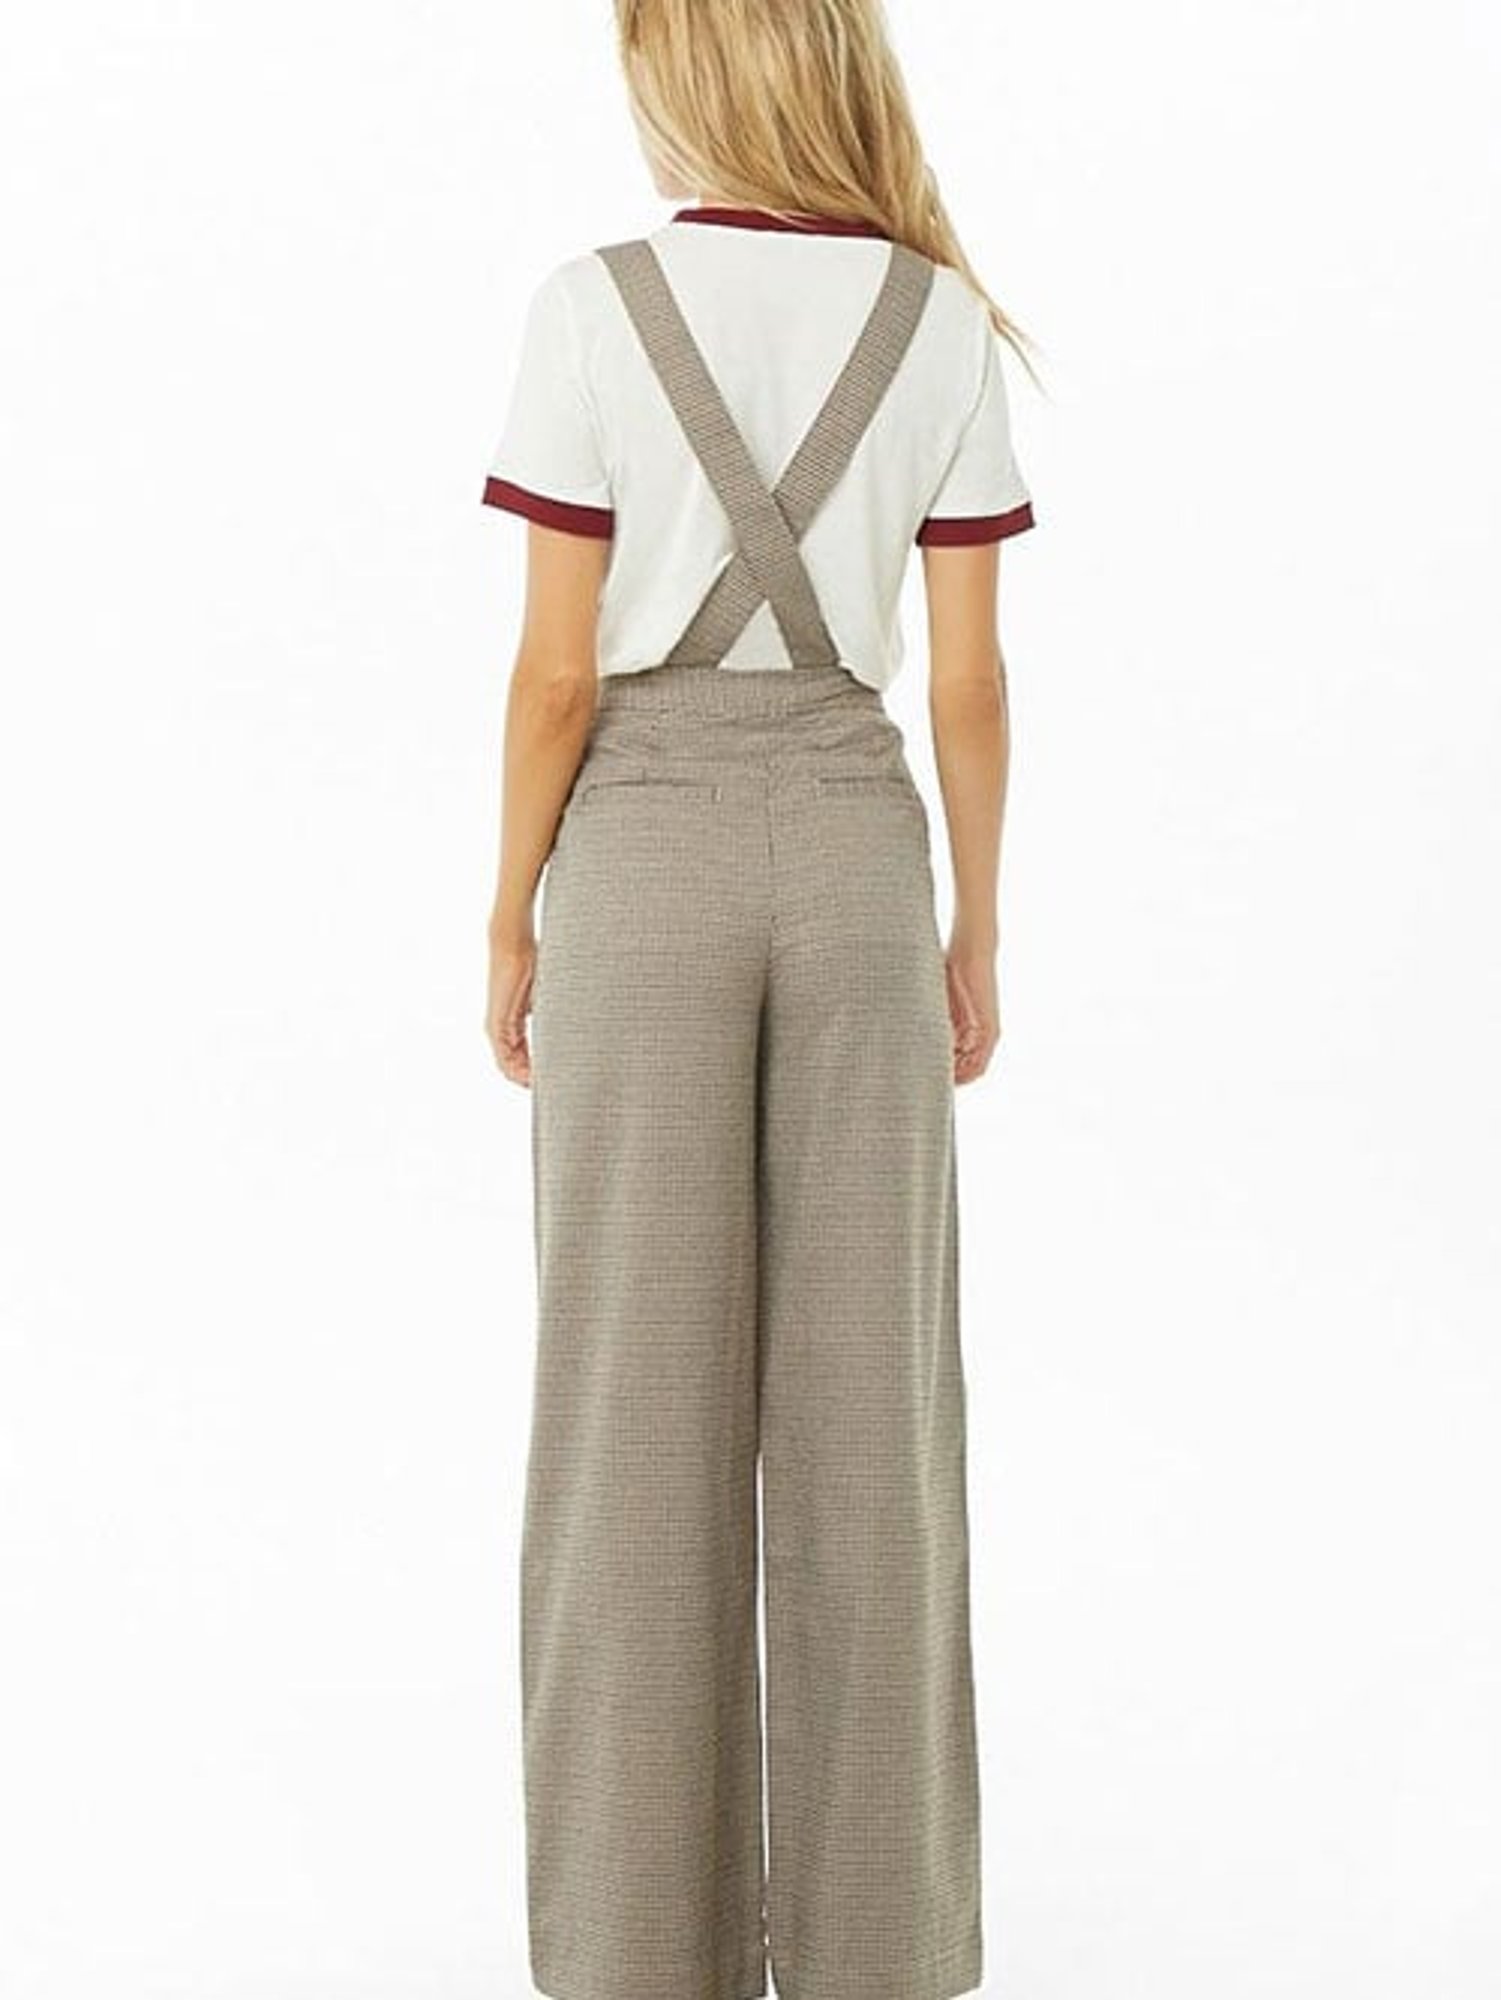 Unique Vintage Plus Size Black White Pin Stripe Thelma Suspender Pants   lupongovph